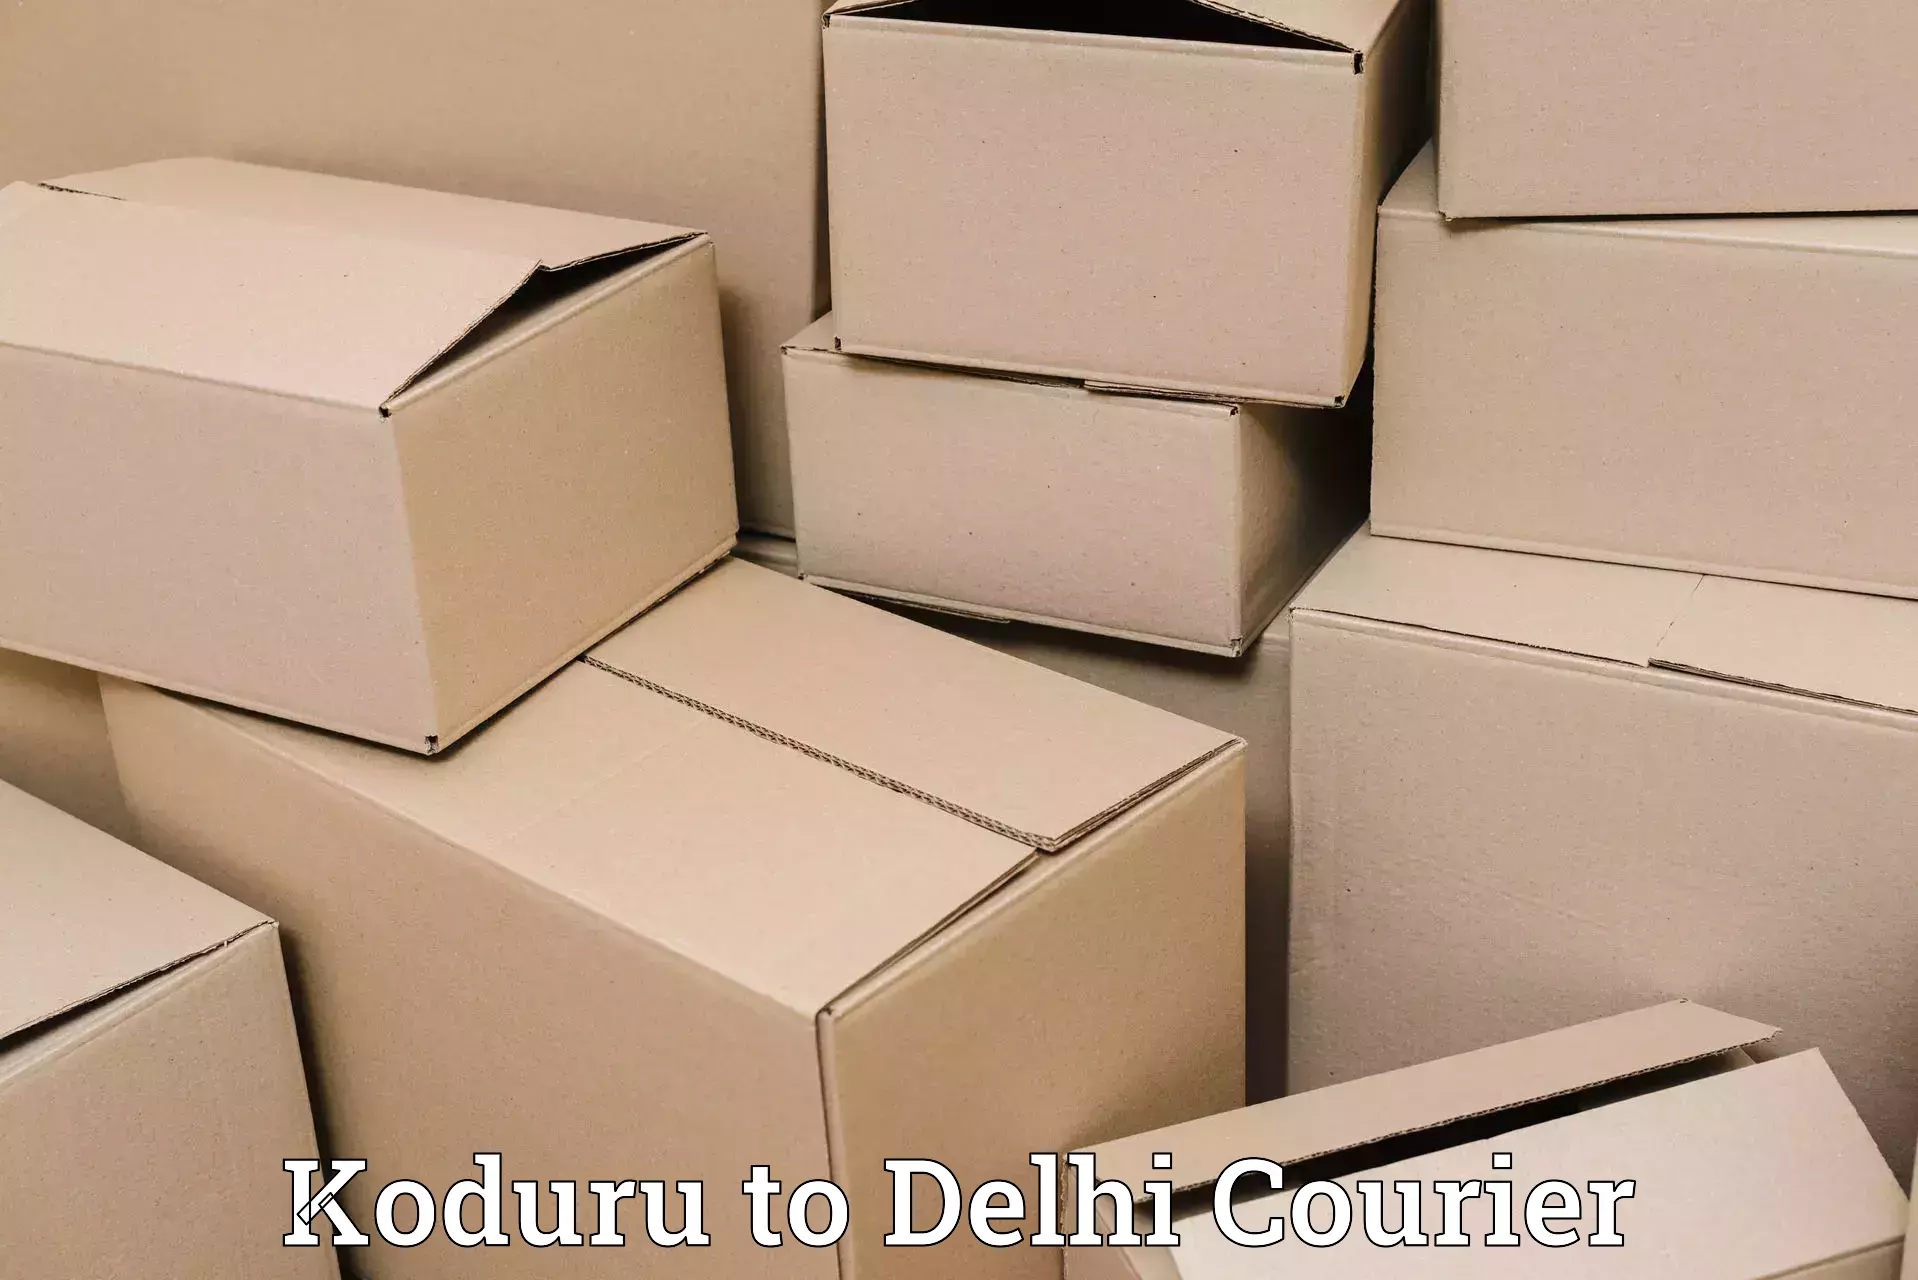 Fast-track shipping solutions Koduru to Krishna Nagar